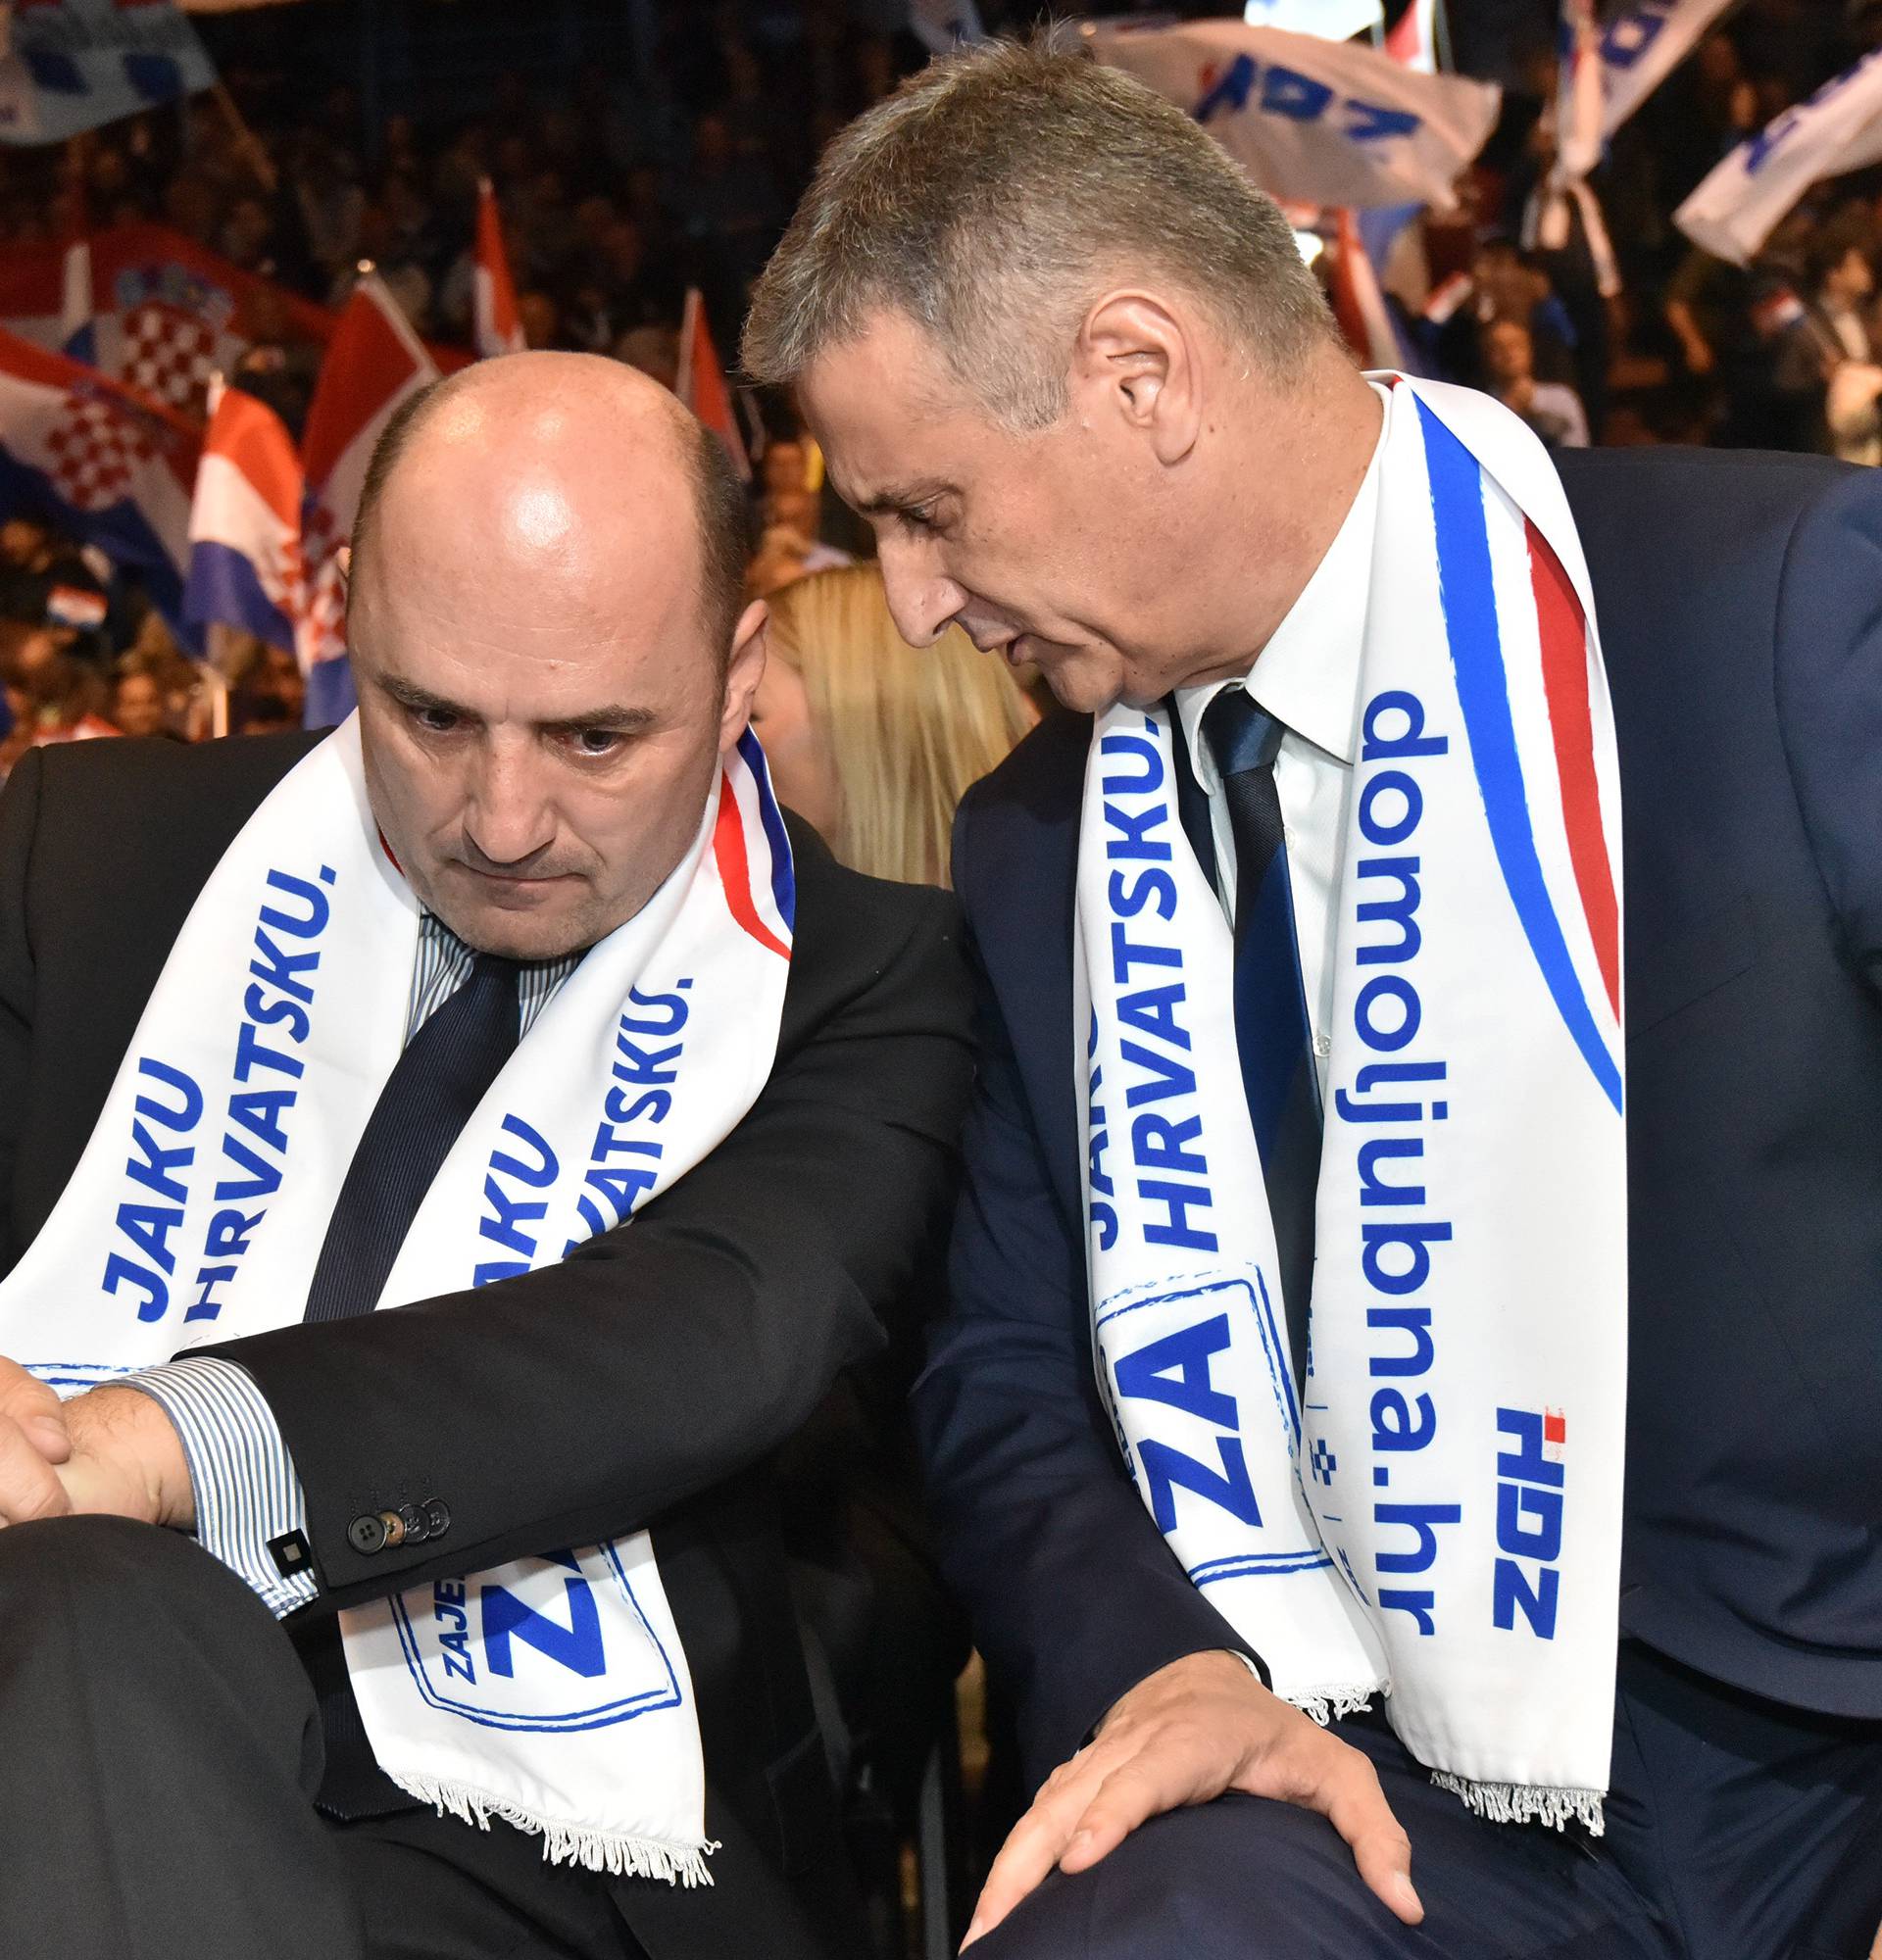 Brkić tražio od Karamarka da odstupi: Spasi stranku i Vladu